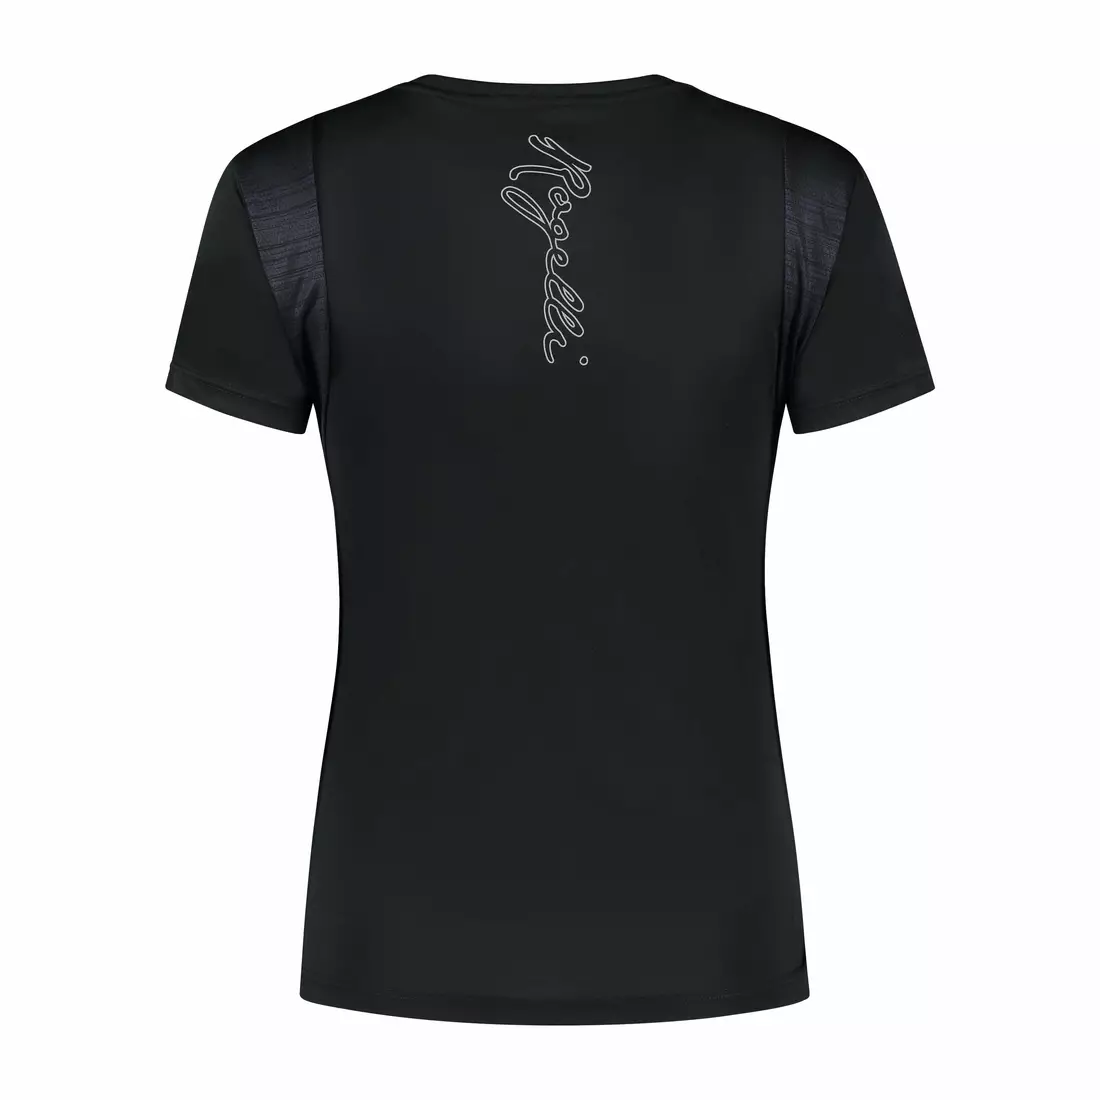 ROGELLI CORE Damen-Laufshirt, schwarz